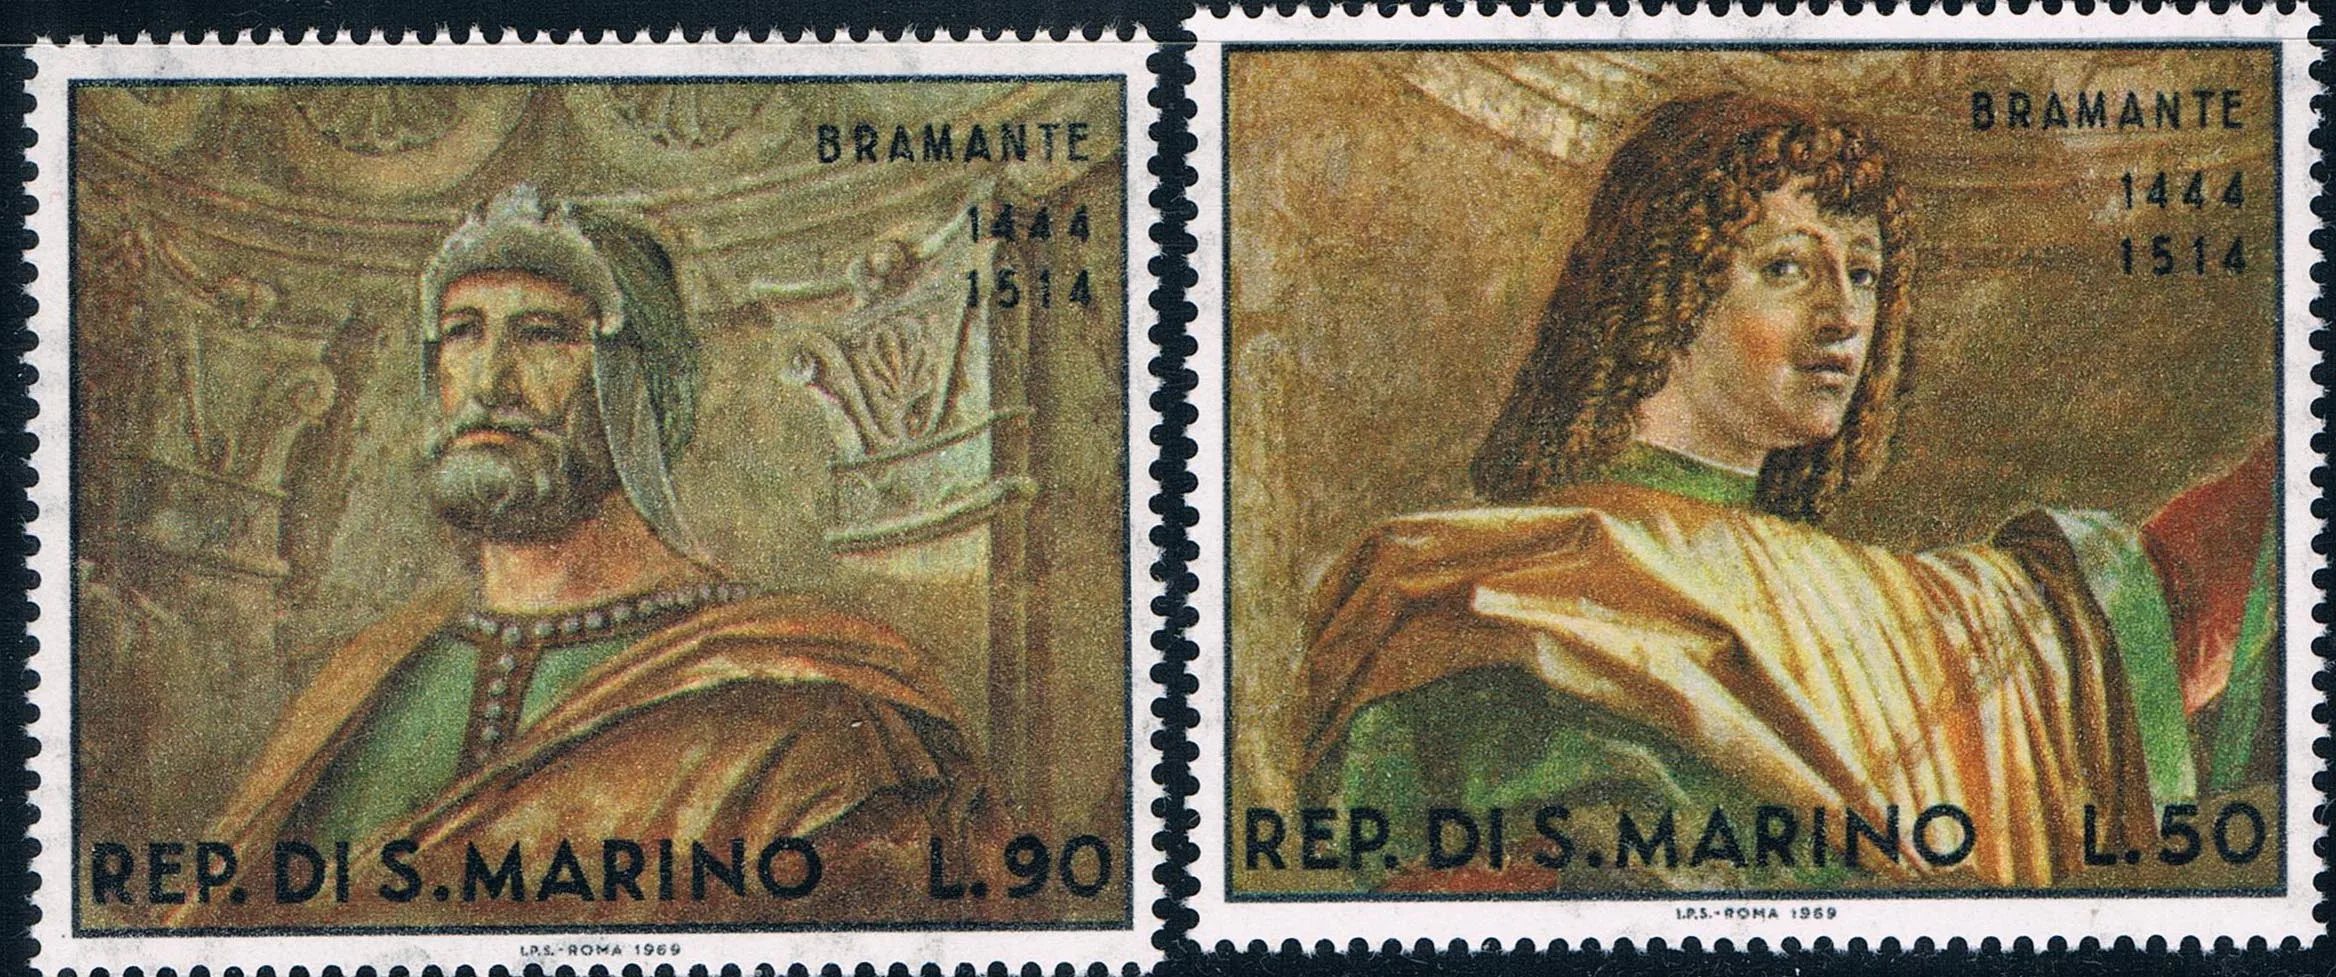 2 шт./компл. новая почтовая печать Сан-Марино 1969 художник Браманте рабочие штампы